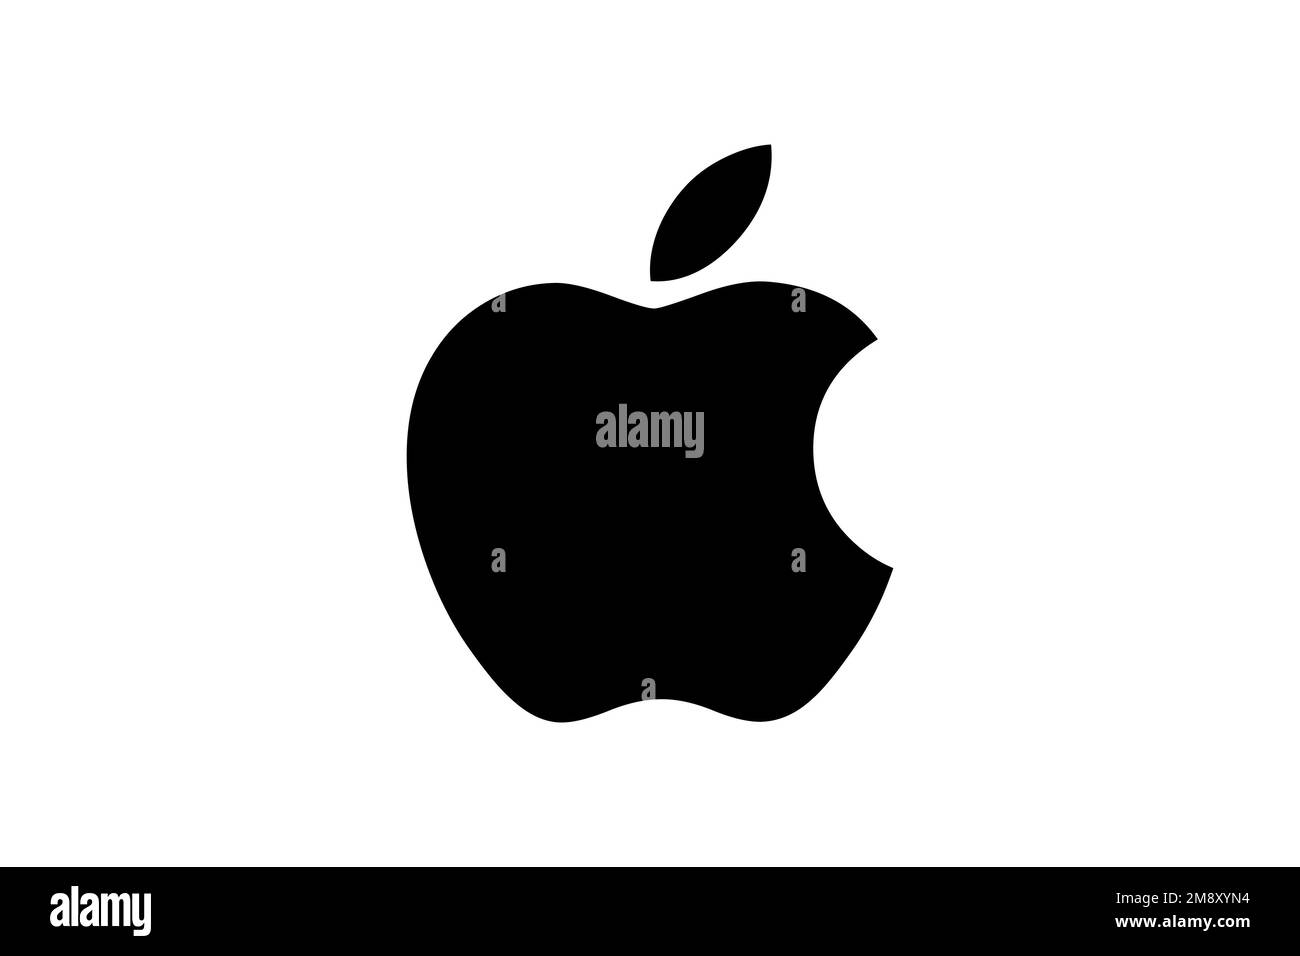 Apple Inc. logo, white background Stock Photo